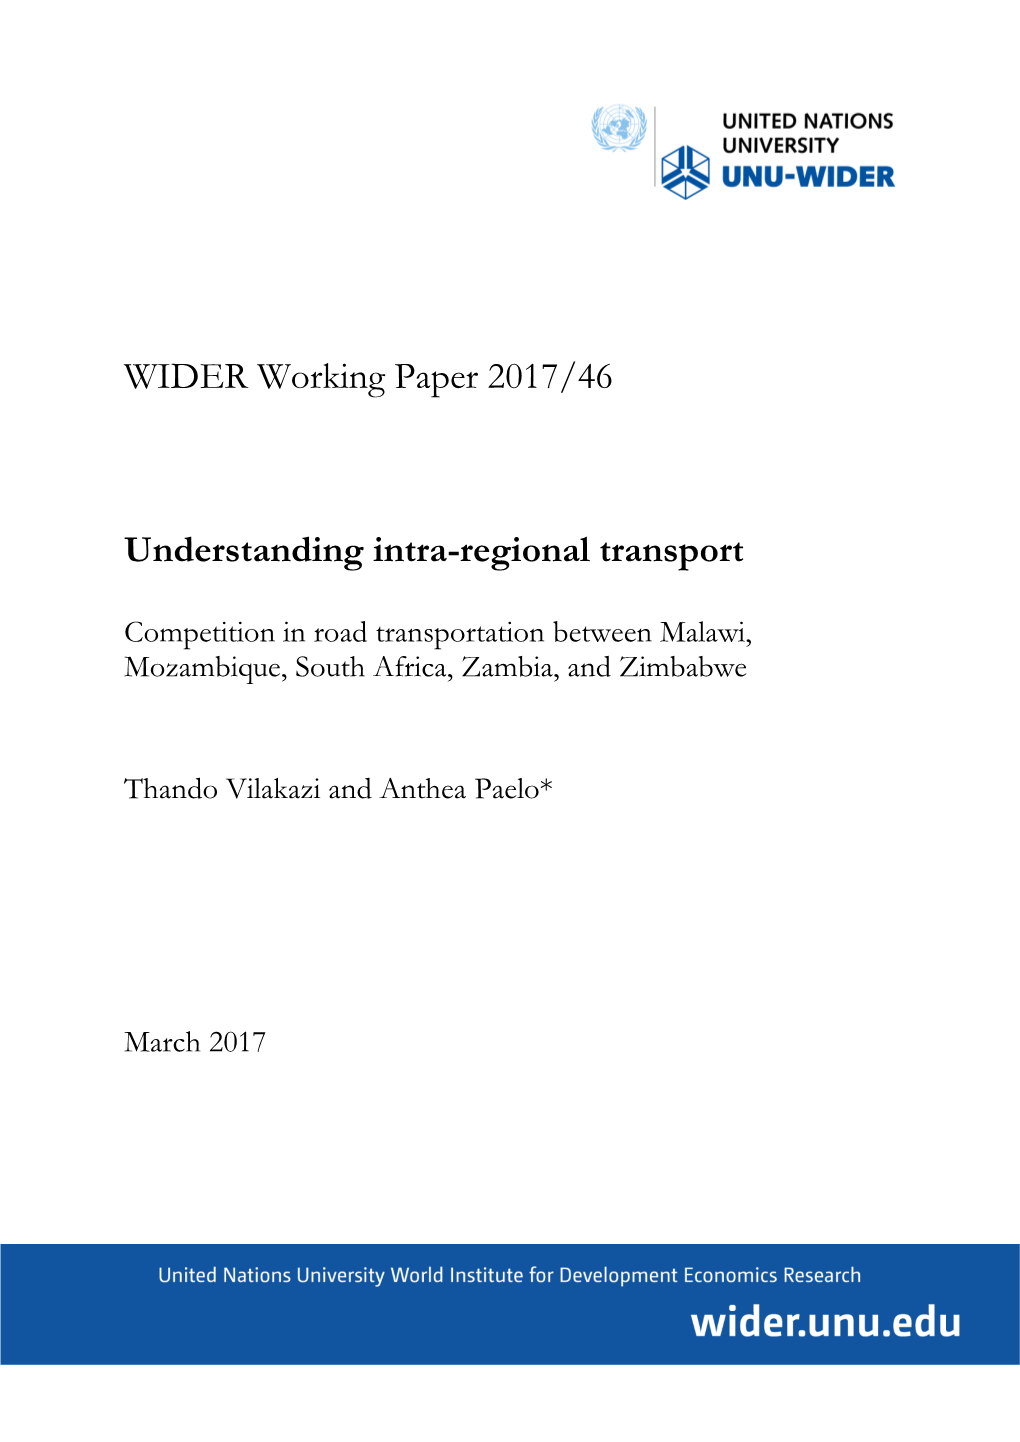 Understanding Intra-Regional Transport